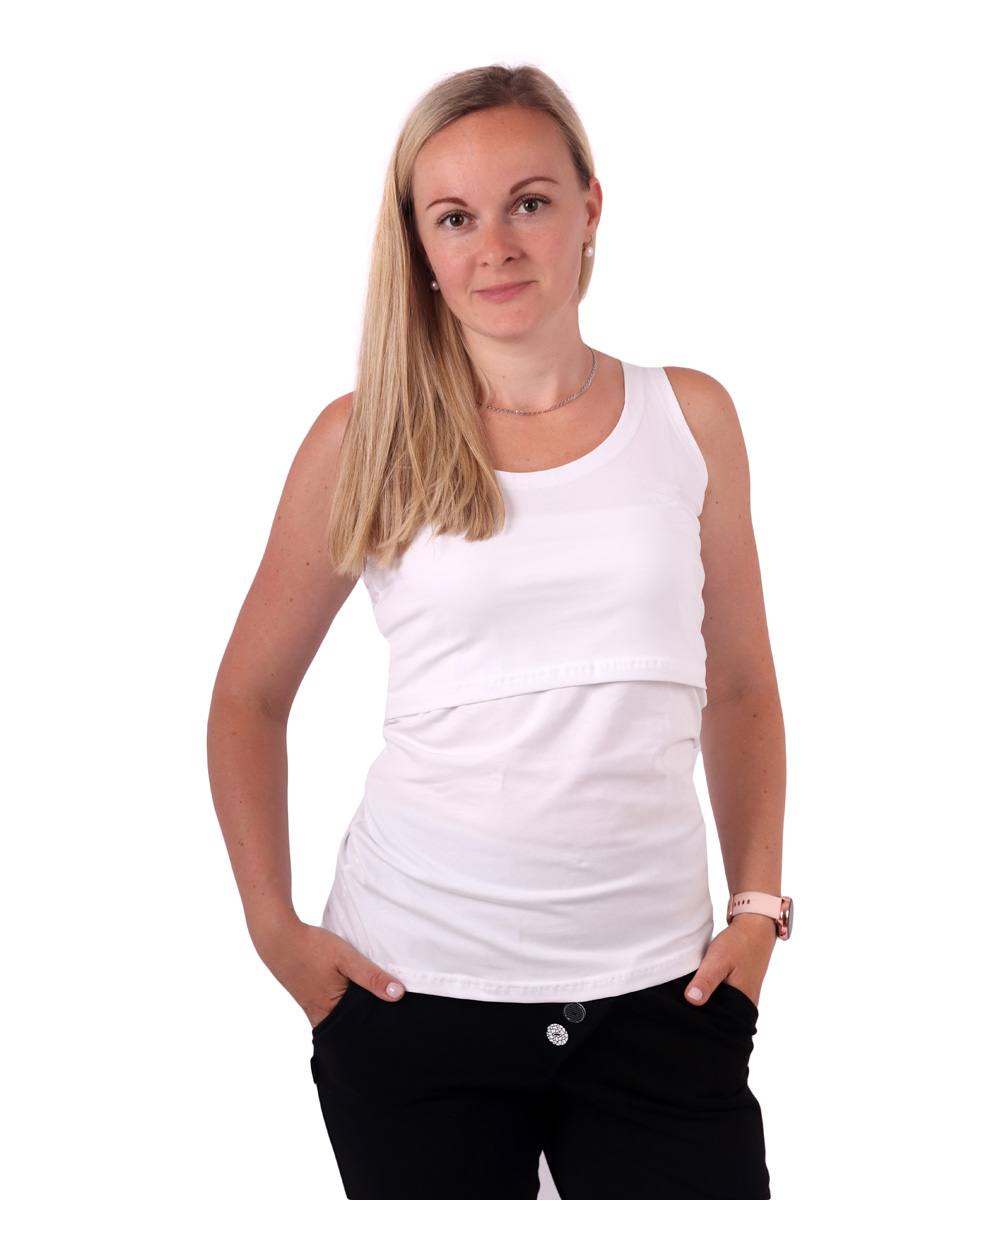 Breast-feeding T-shirt Katerina, no sleeves, WHITE